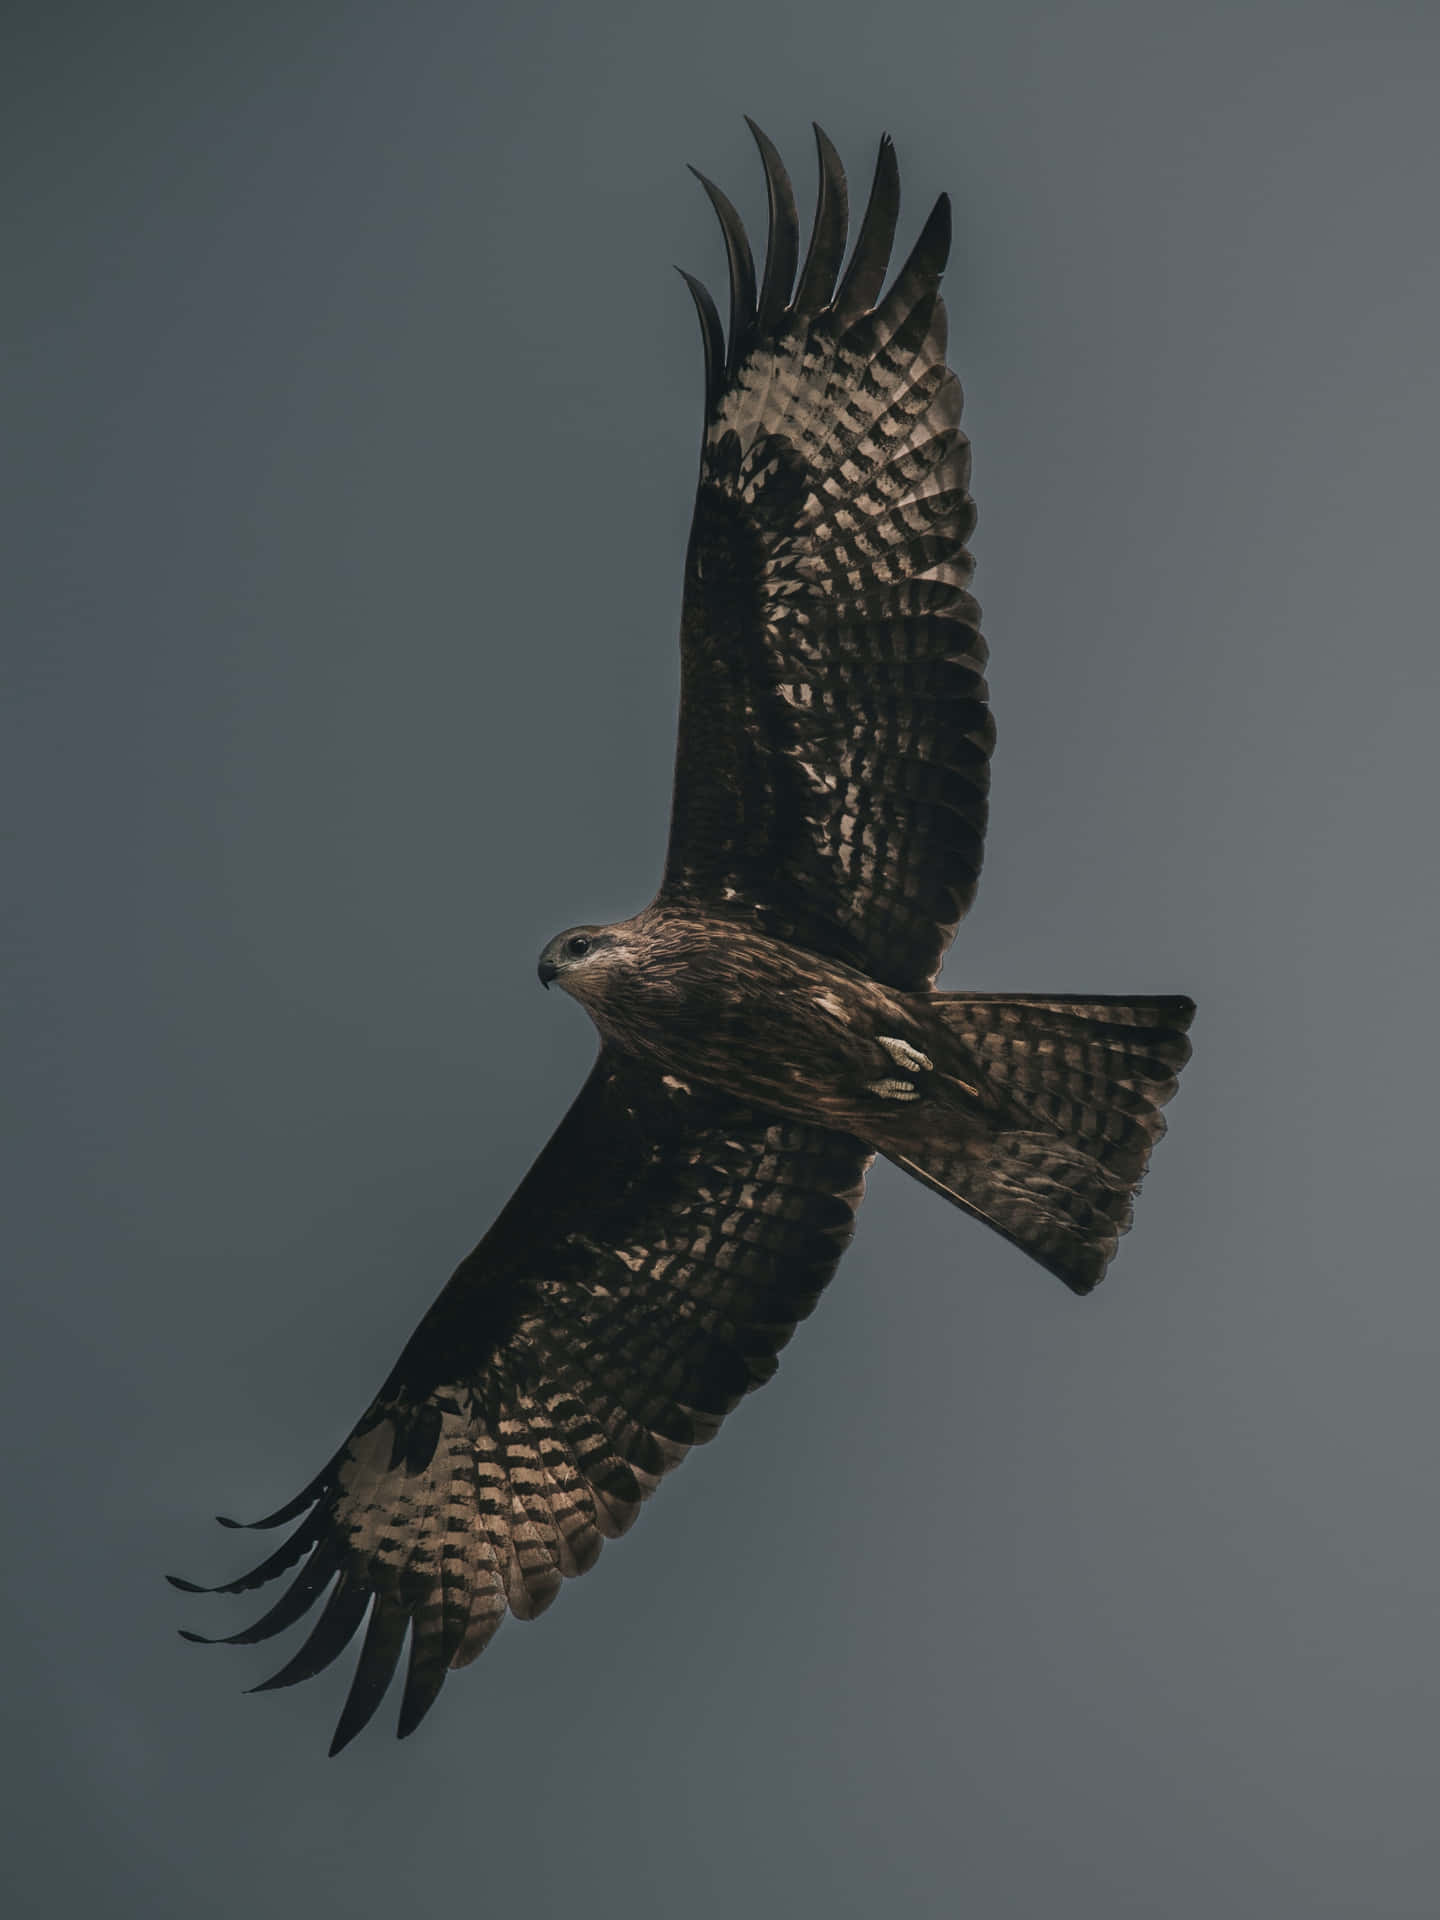 Falcon in Flight